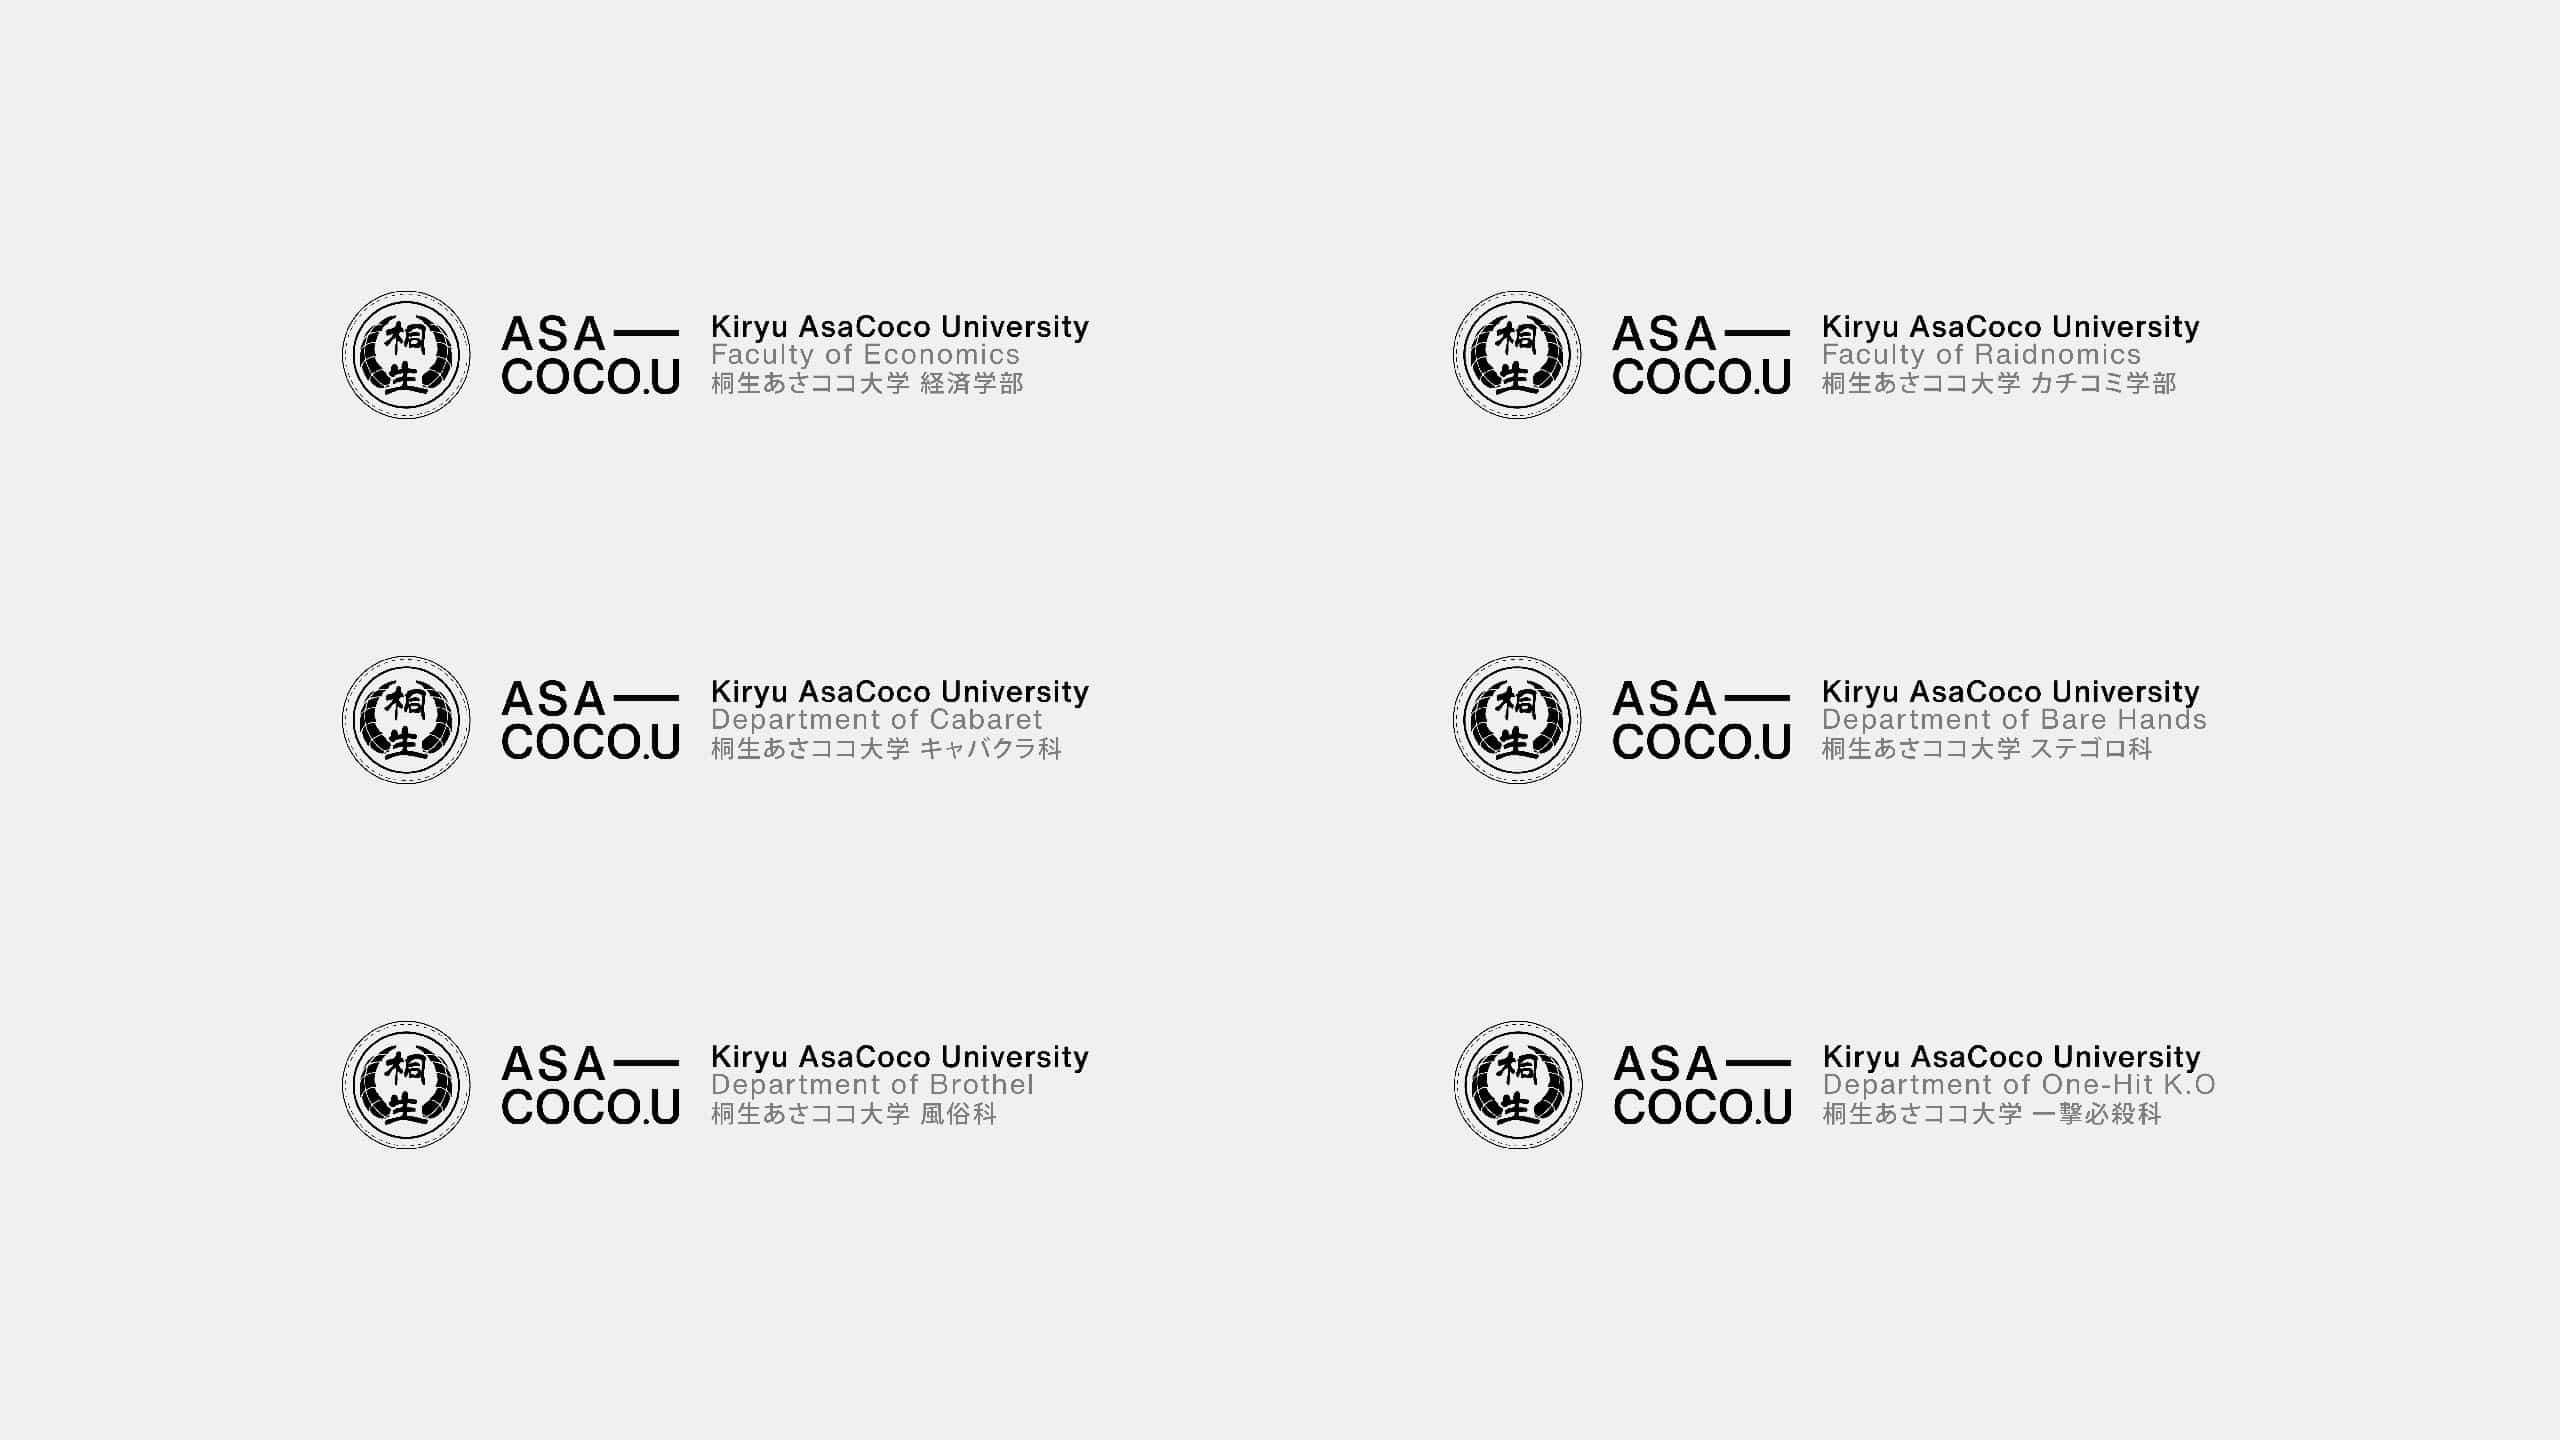 AsacocoU-Branding-v1.3-02_2560x